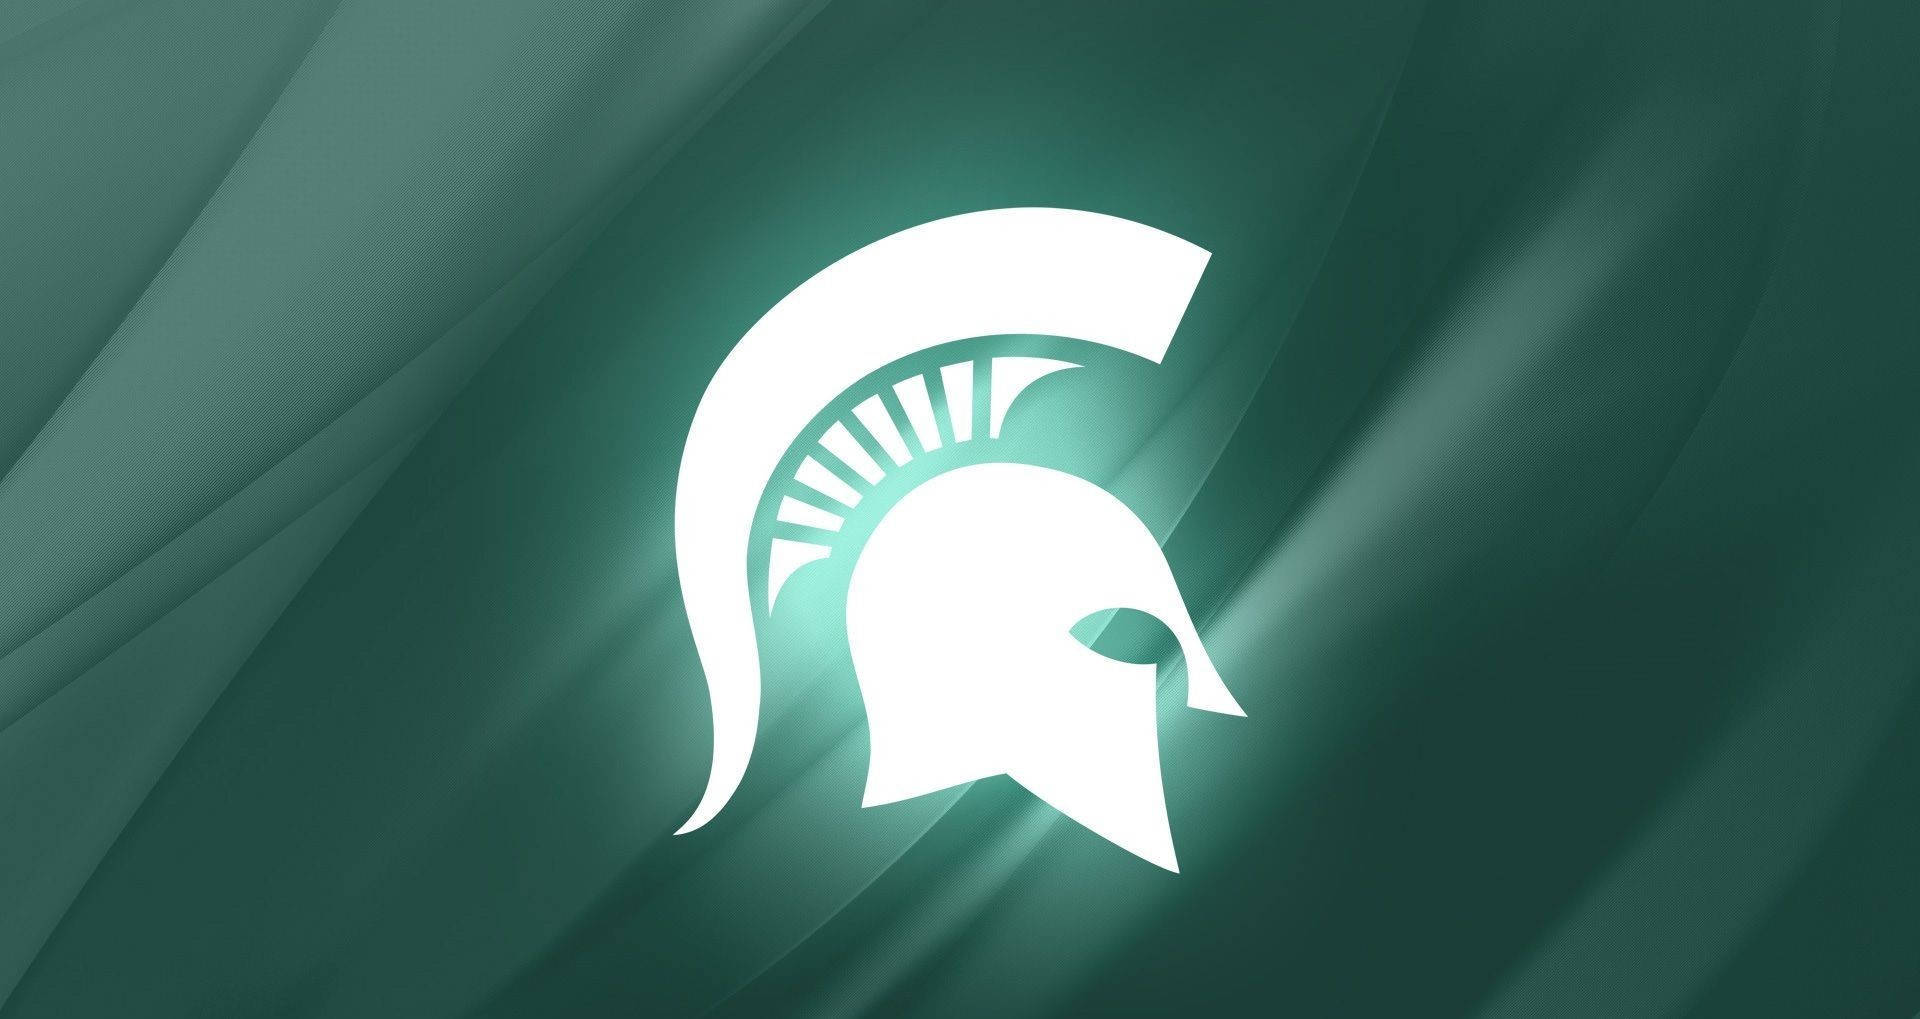 Logotiporesplandeciente De La Universidad Estatal De Michigan. Fondo de pantalla